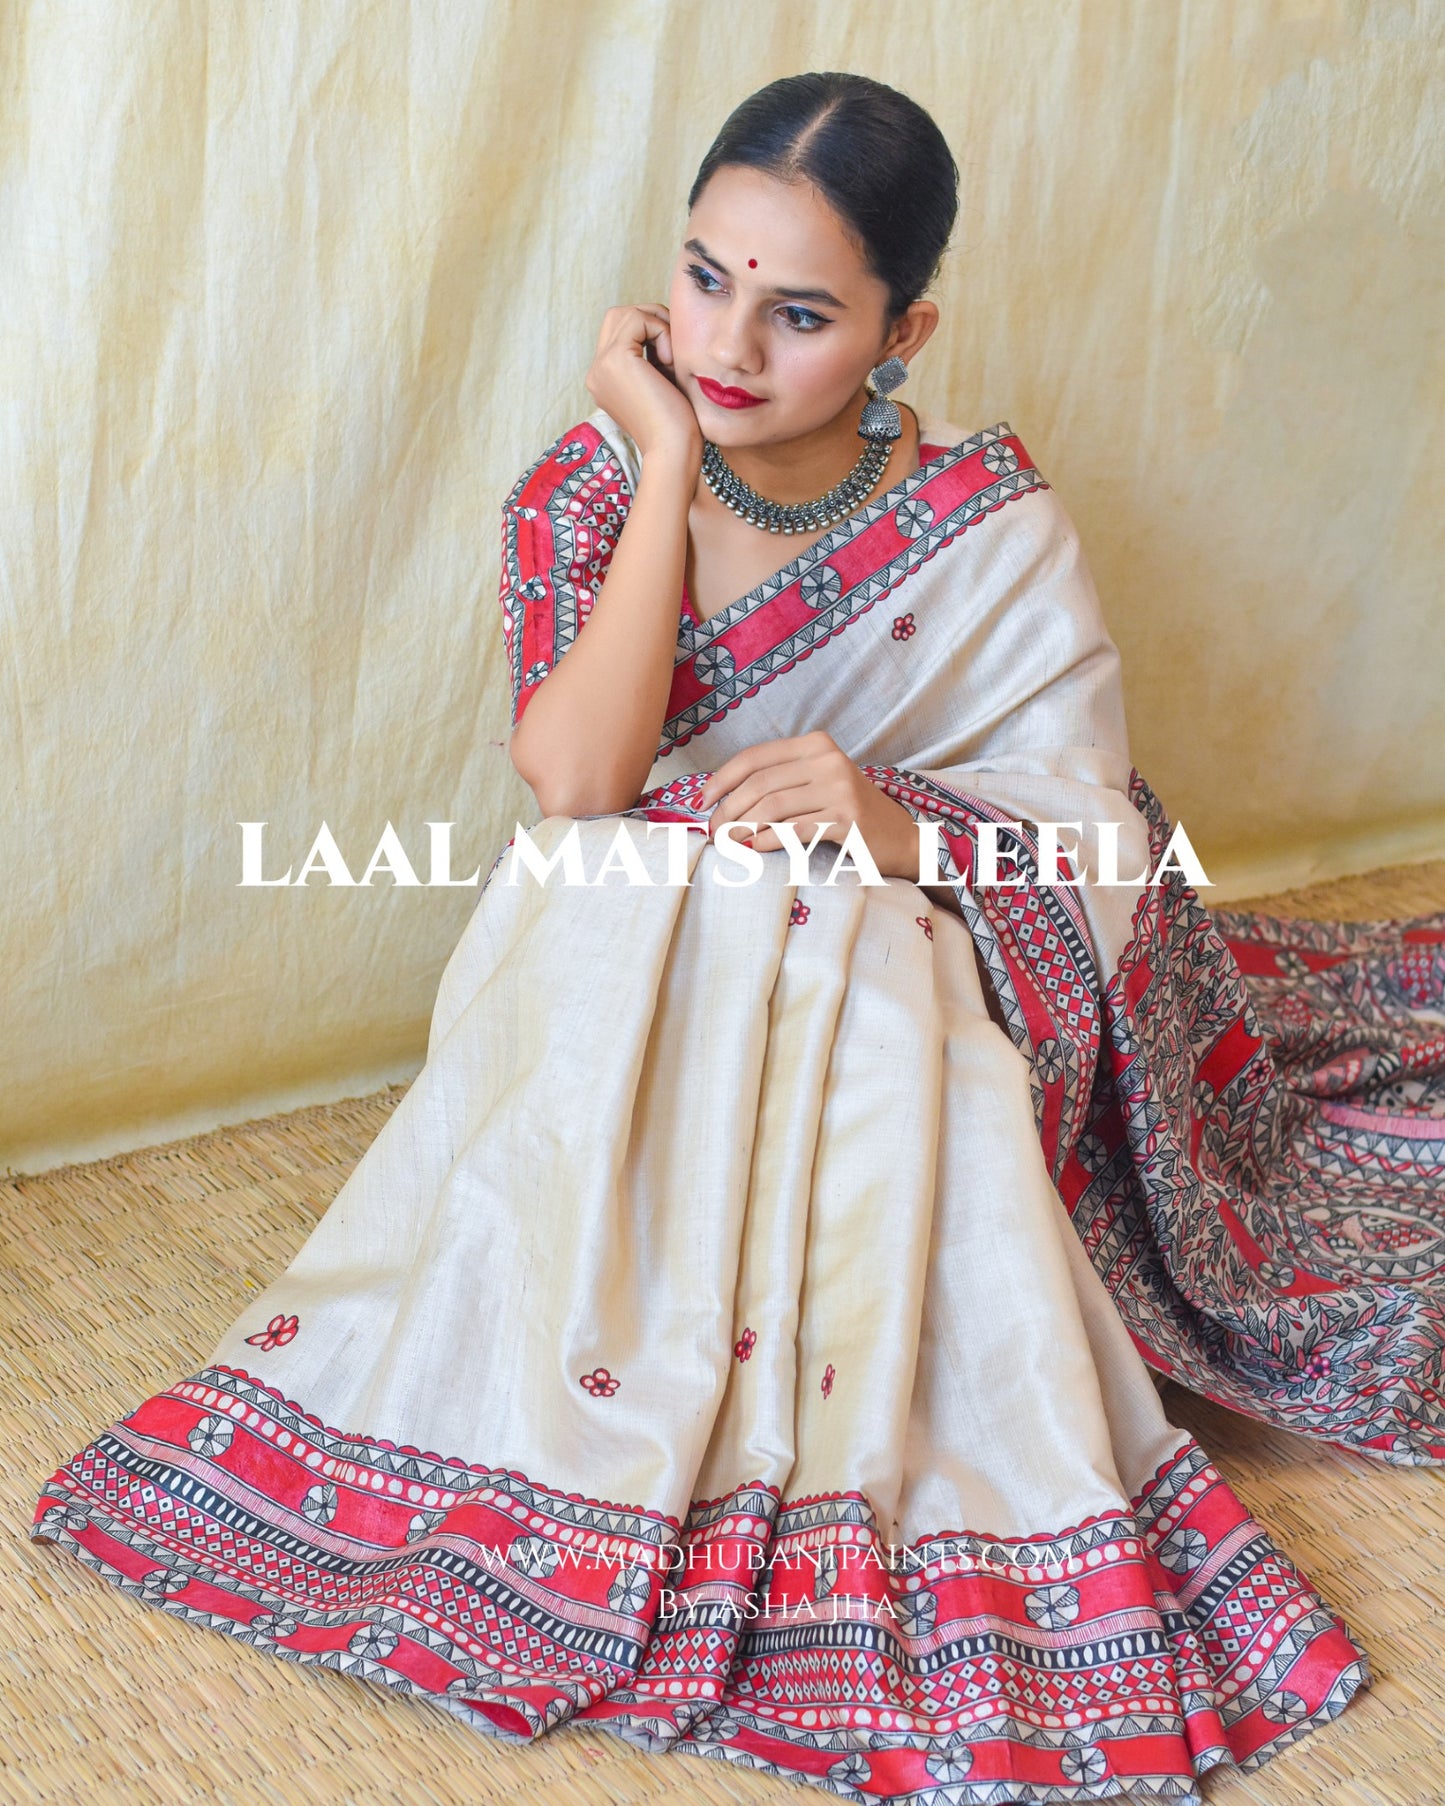 'LAAL MATSYA LEELA'  Handpainted Madhubani Tussar Silk Saree